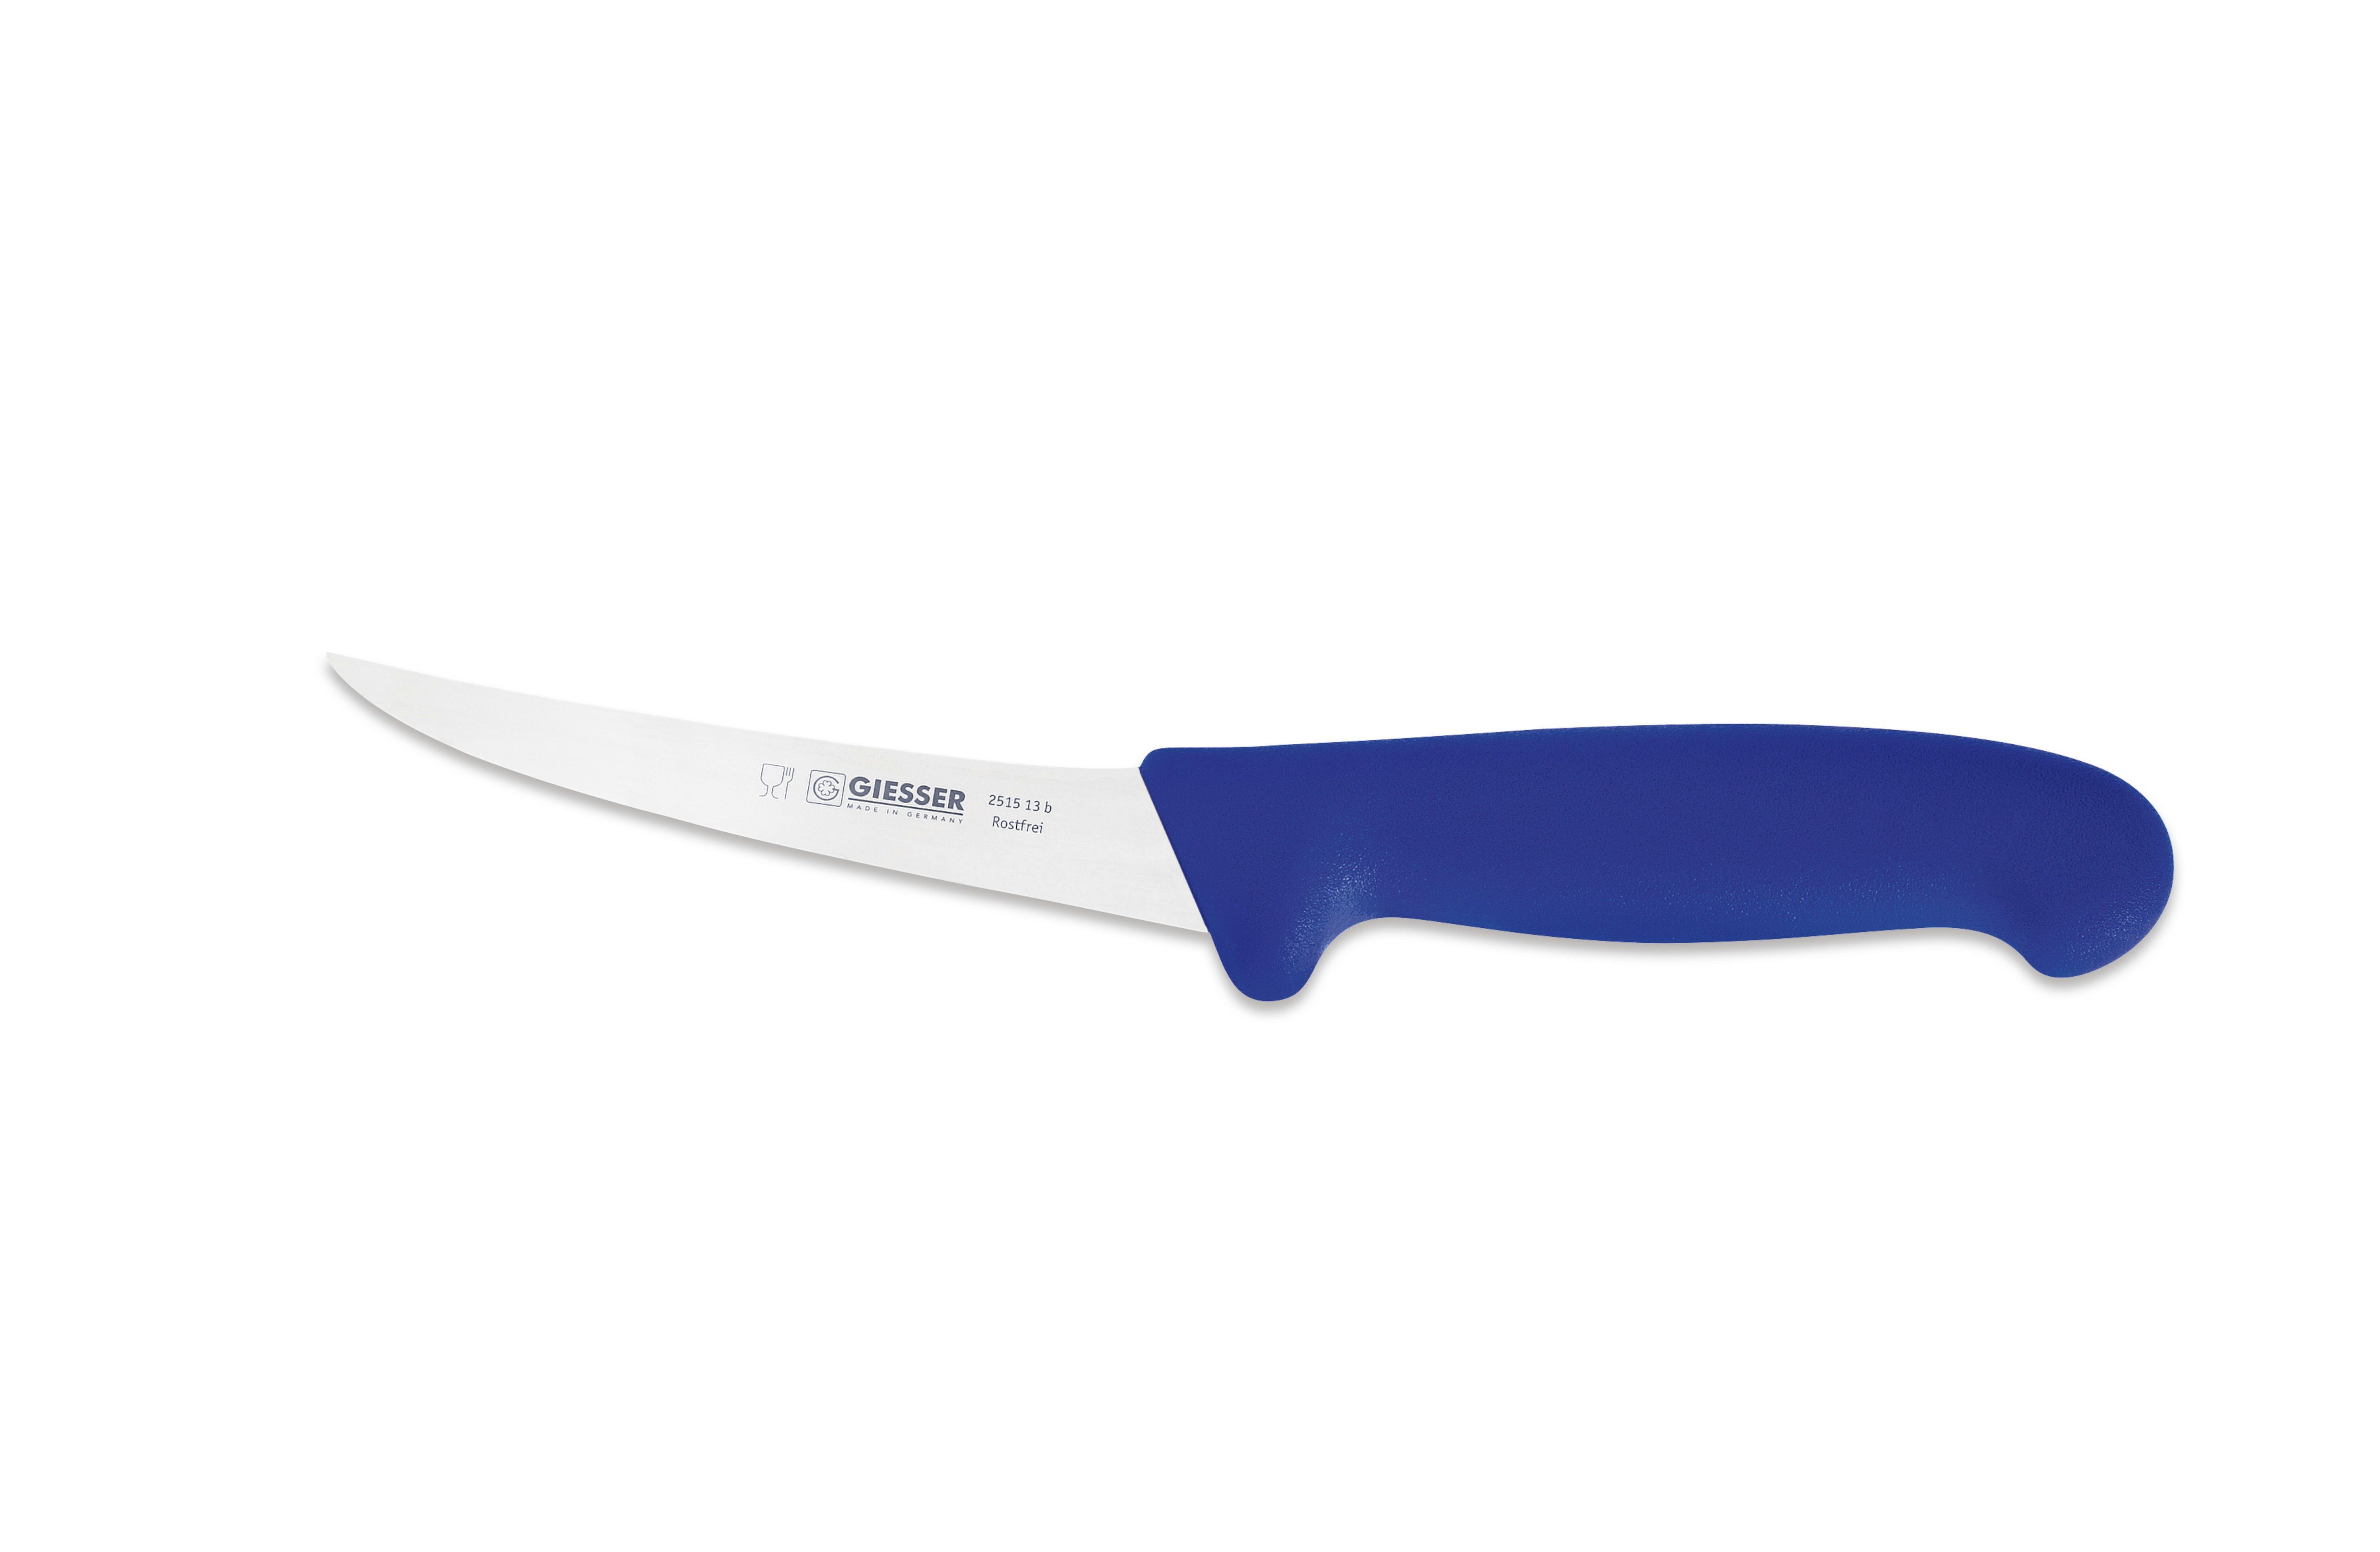 Giesser Messer Ausbeinmesser Fleischermesser 2505 13-17, Klingenstärke: sehr flexibel, flexibel, stark Blau | Ausbeinmesser